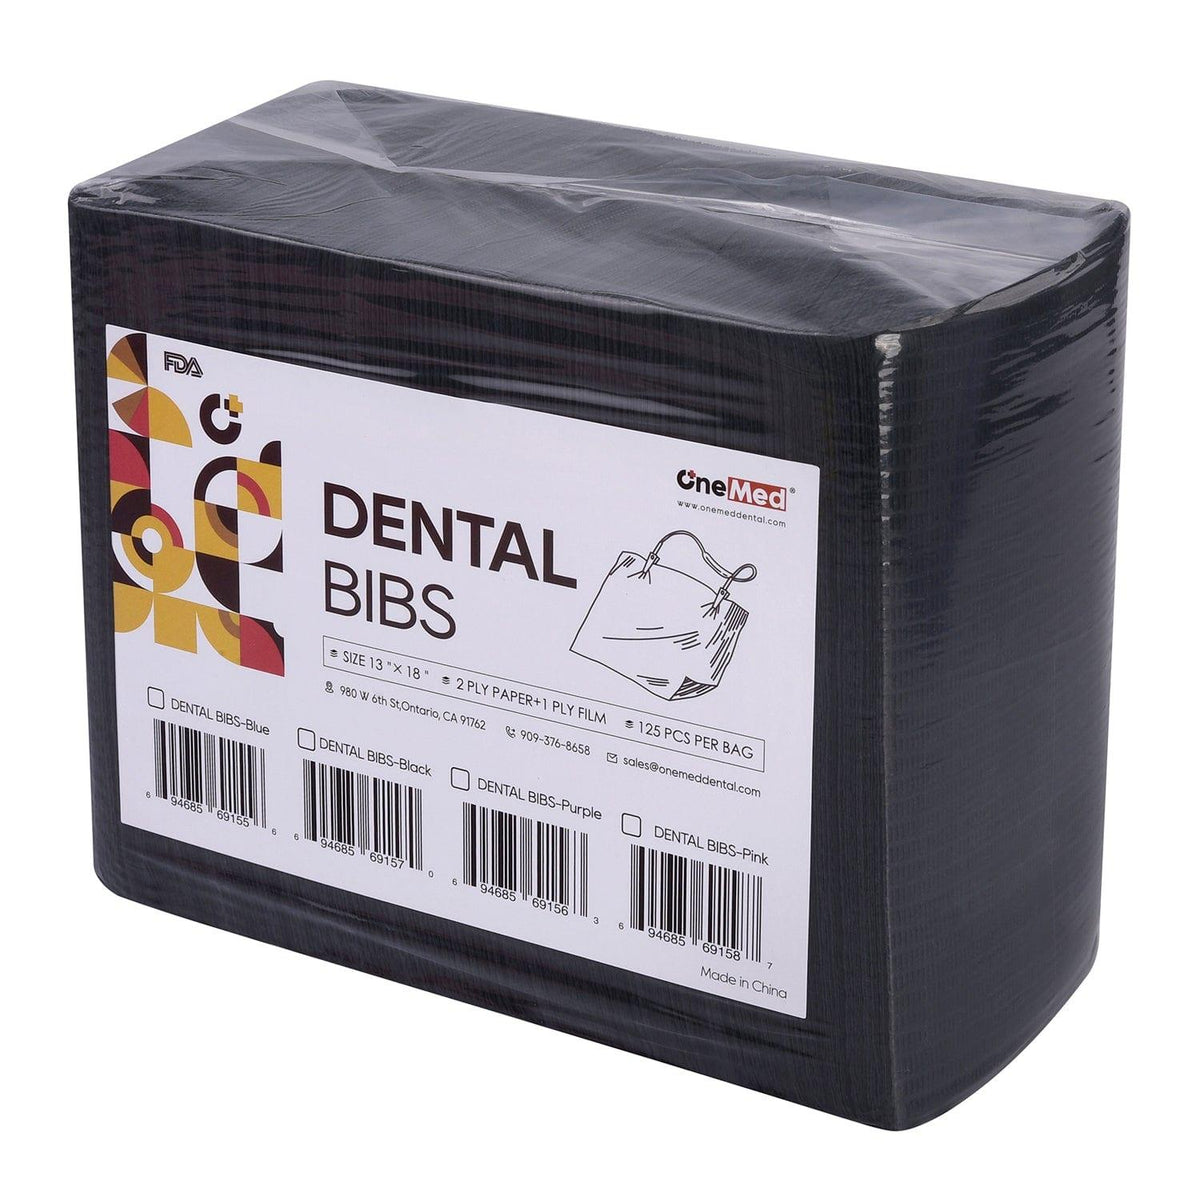 OneMed Black Dental Paper Bibs 3-Ply 13"x18" 125pcs/bag - OneMed Dental